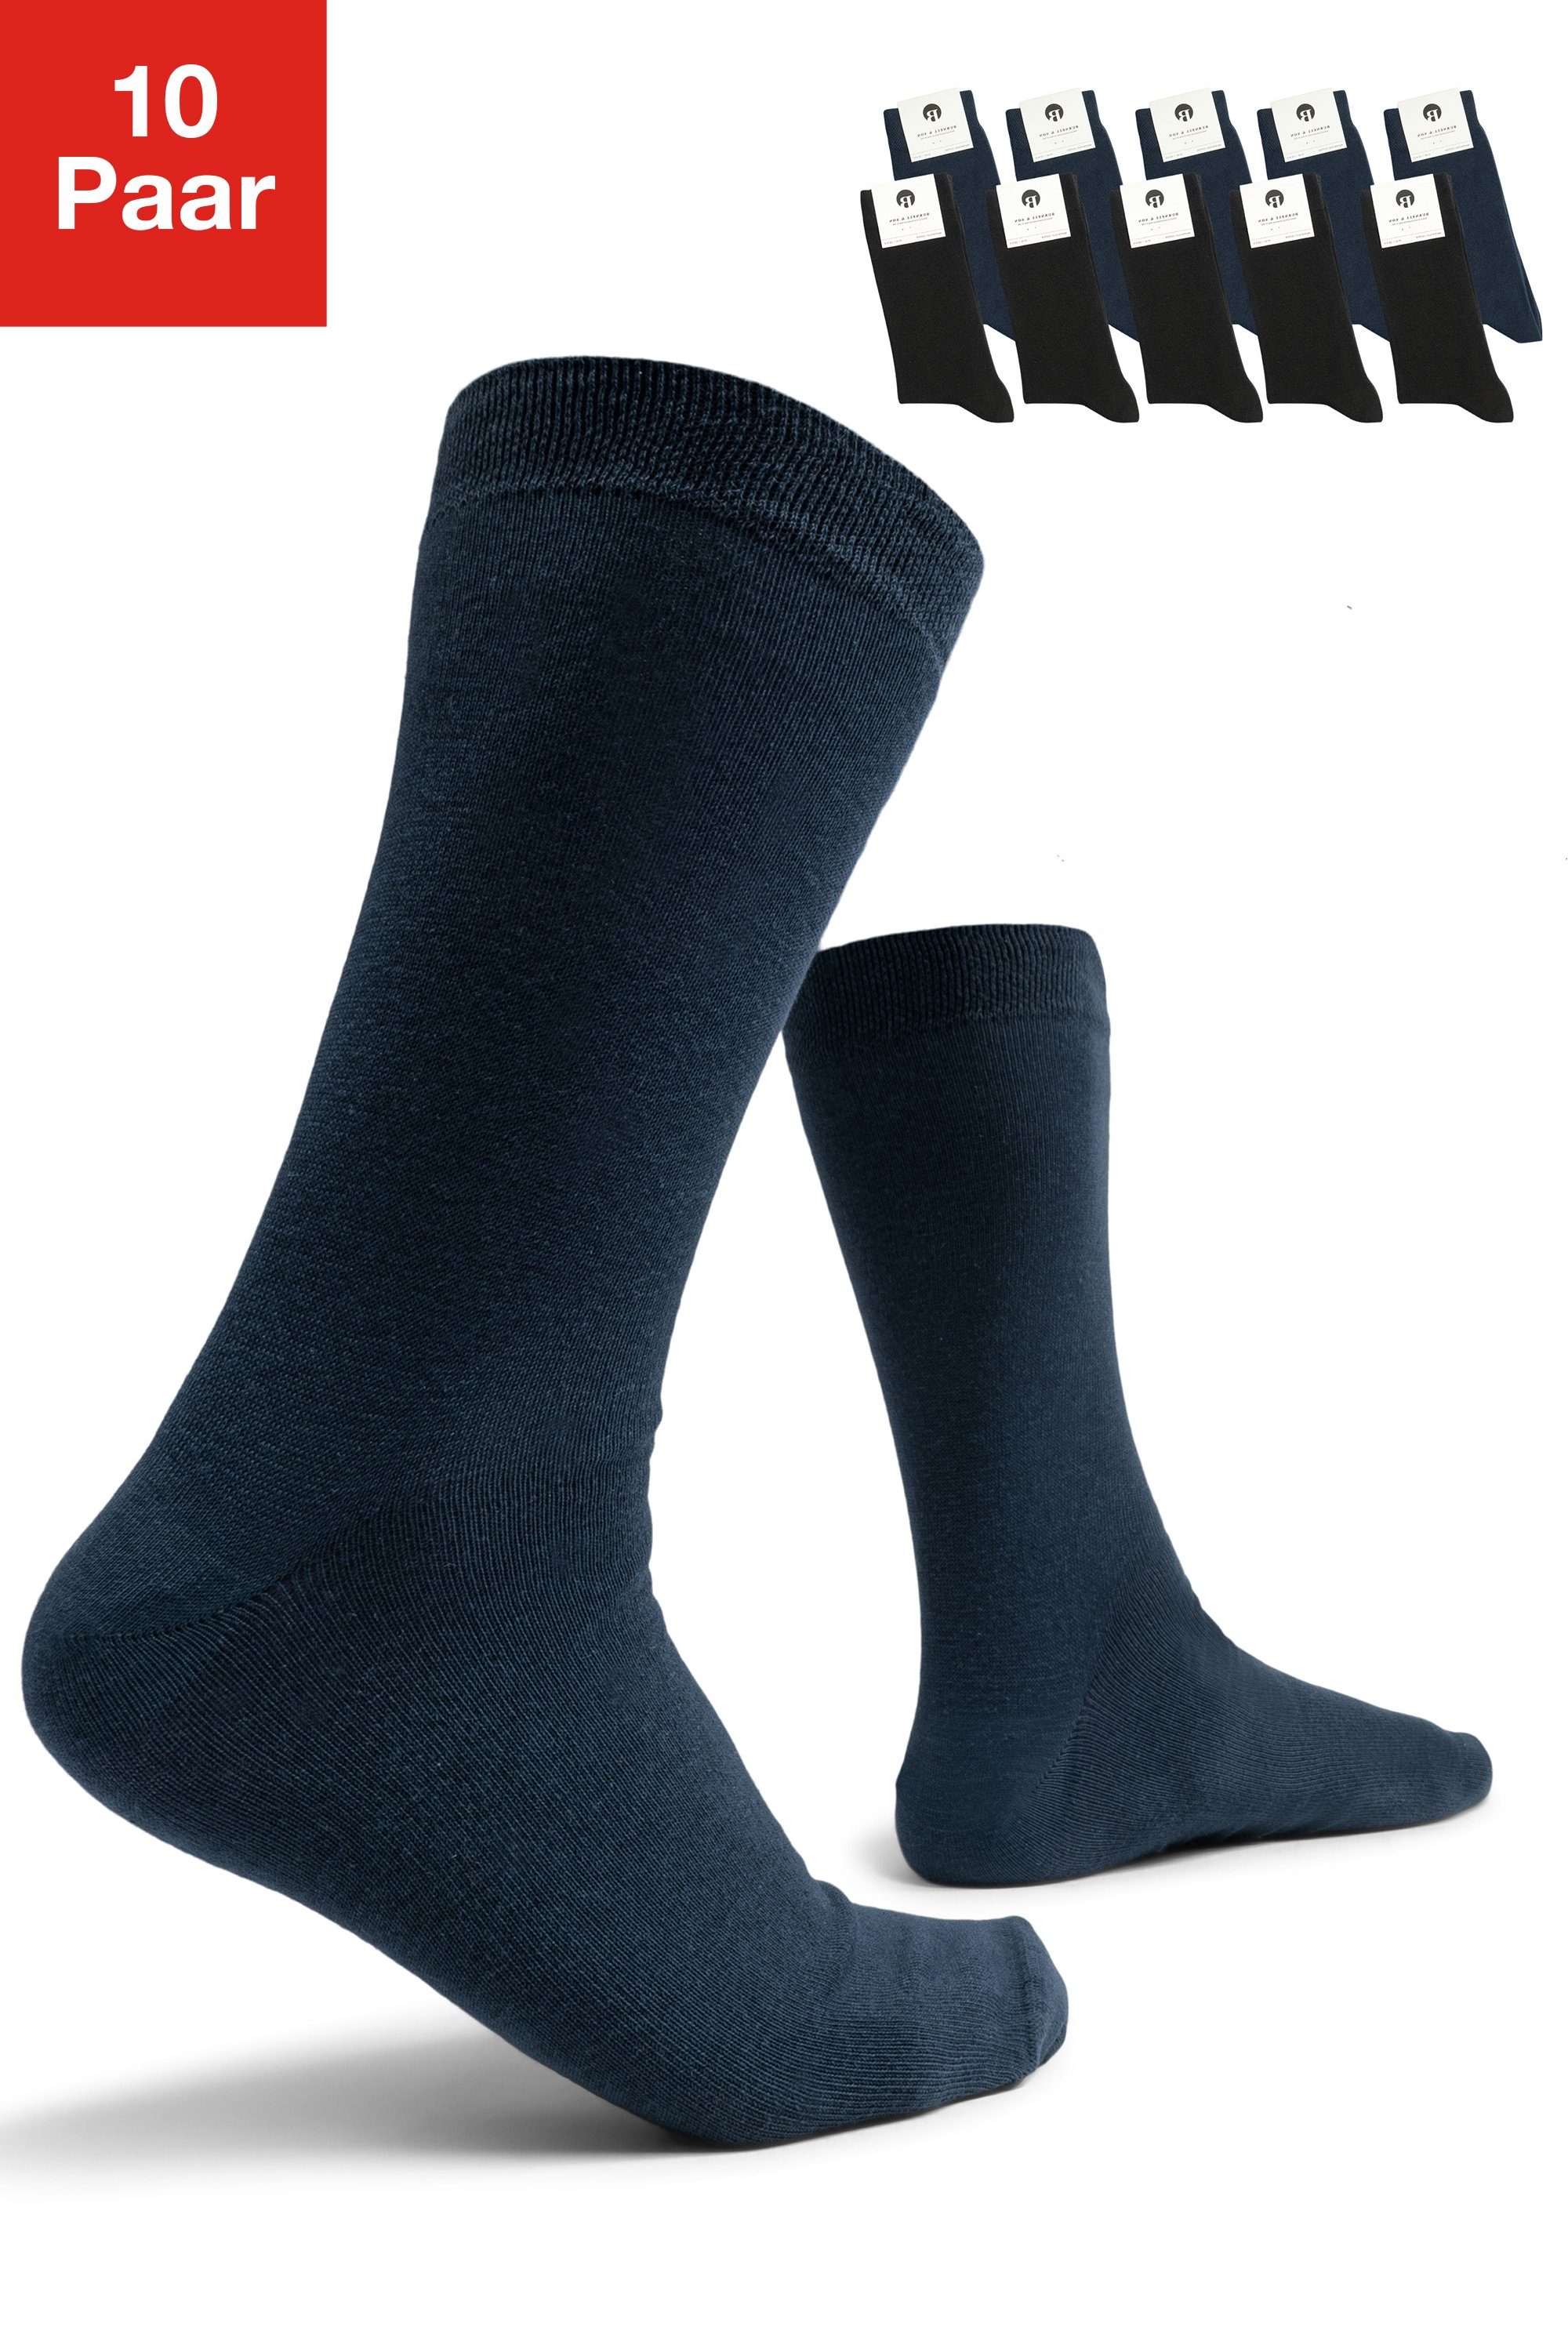 Burnell & Son Businesssocken Socken für Damen & Herren (Set, 10-Paar) mit Komfortbund aus Baumwolle 5x Schwarz 5x Blau